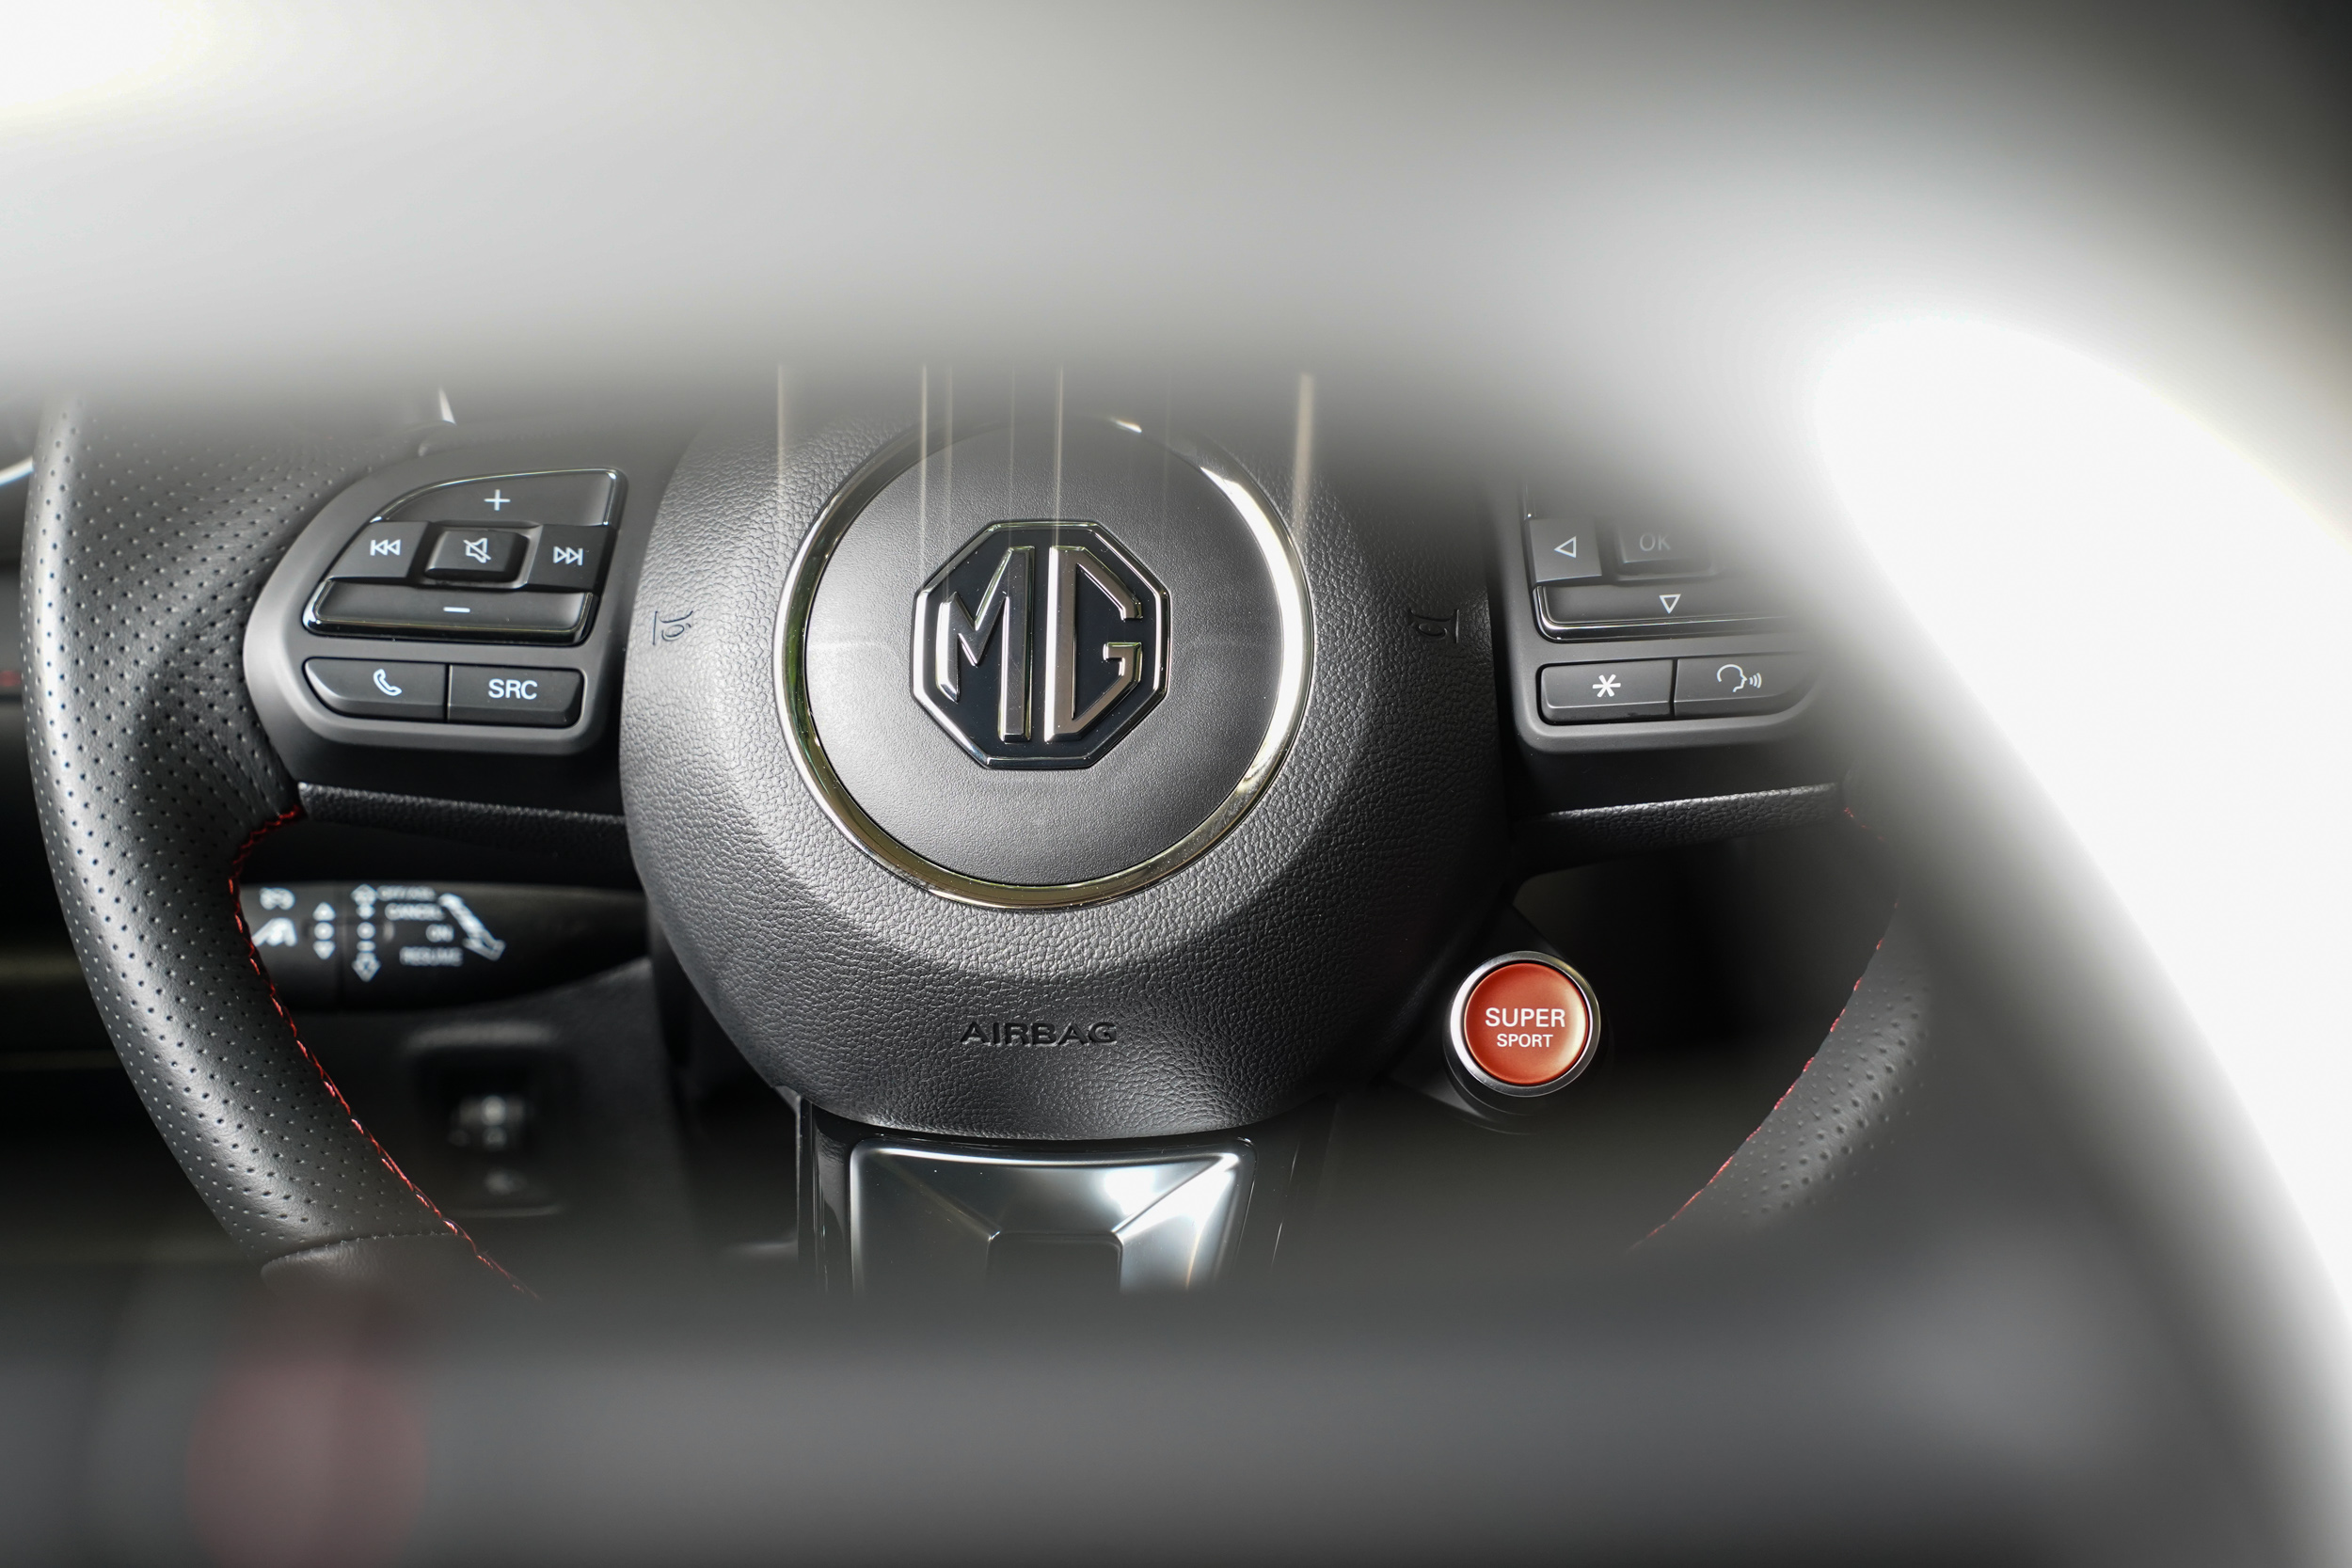 類似保時捷的設計，將 SuperSport 駕駛模式介面控制開關設計在方向盤上。